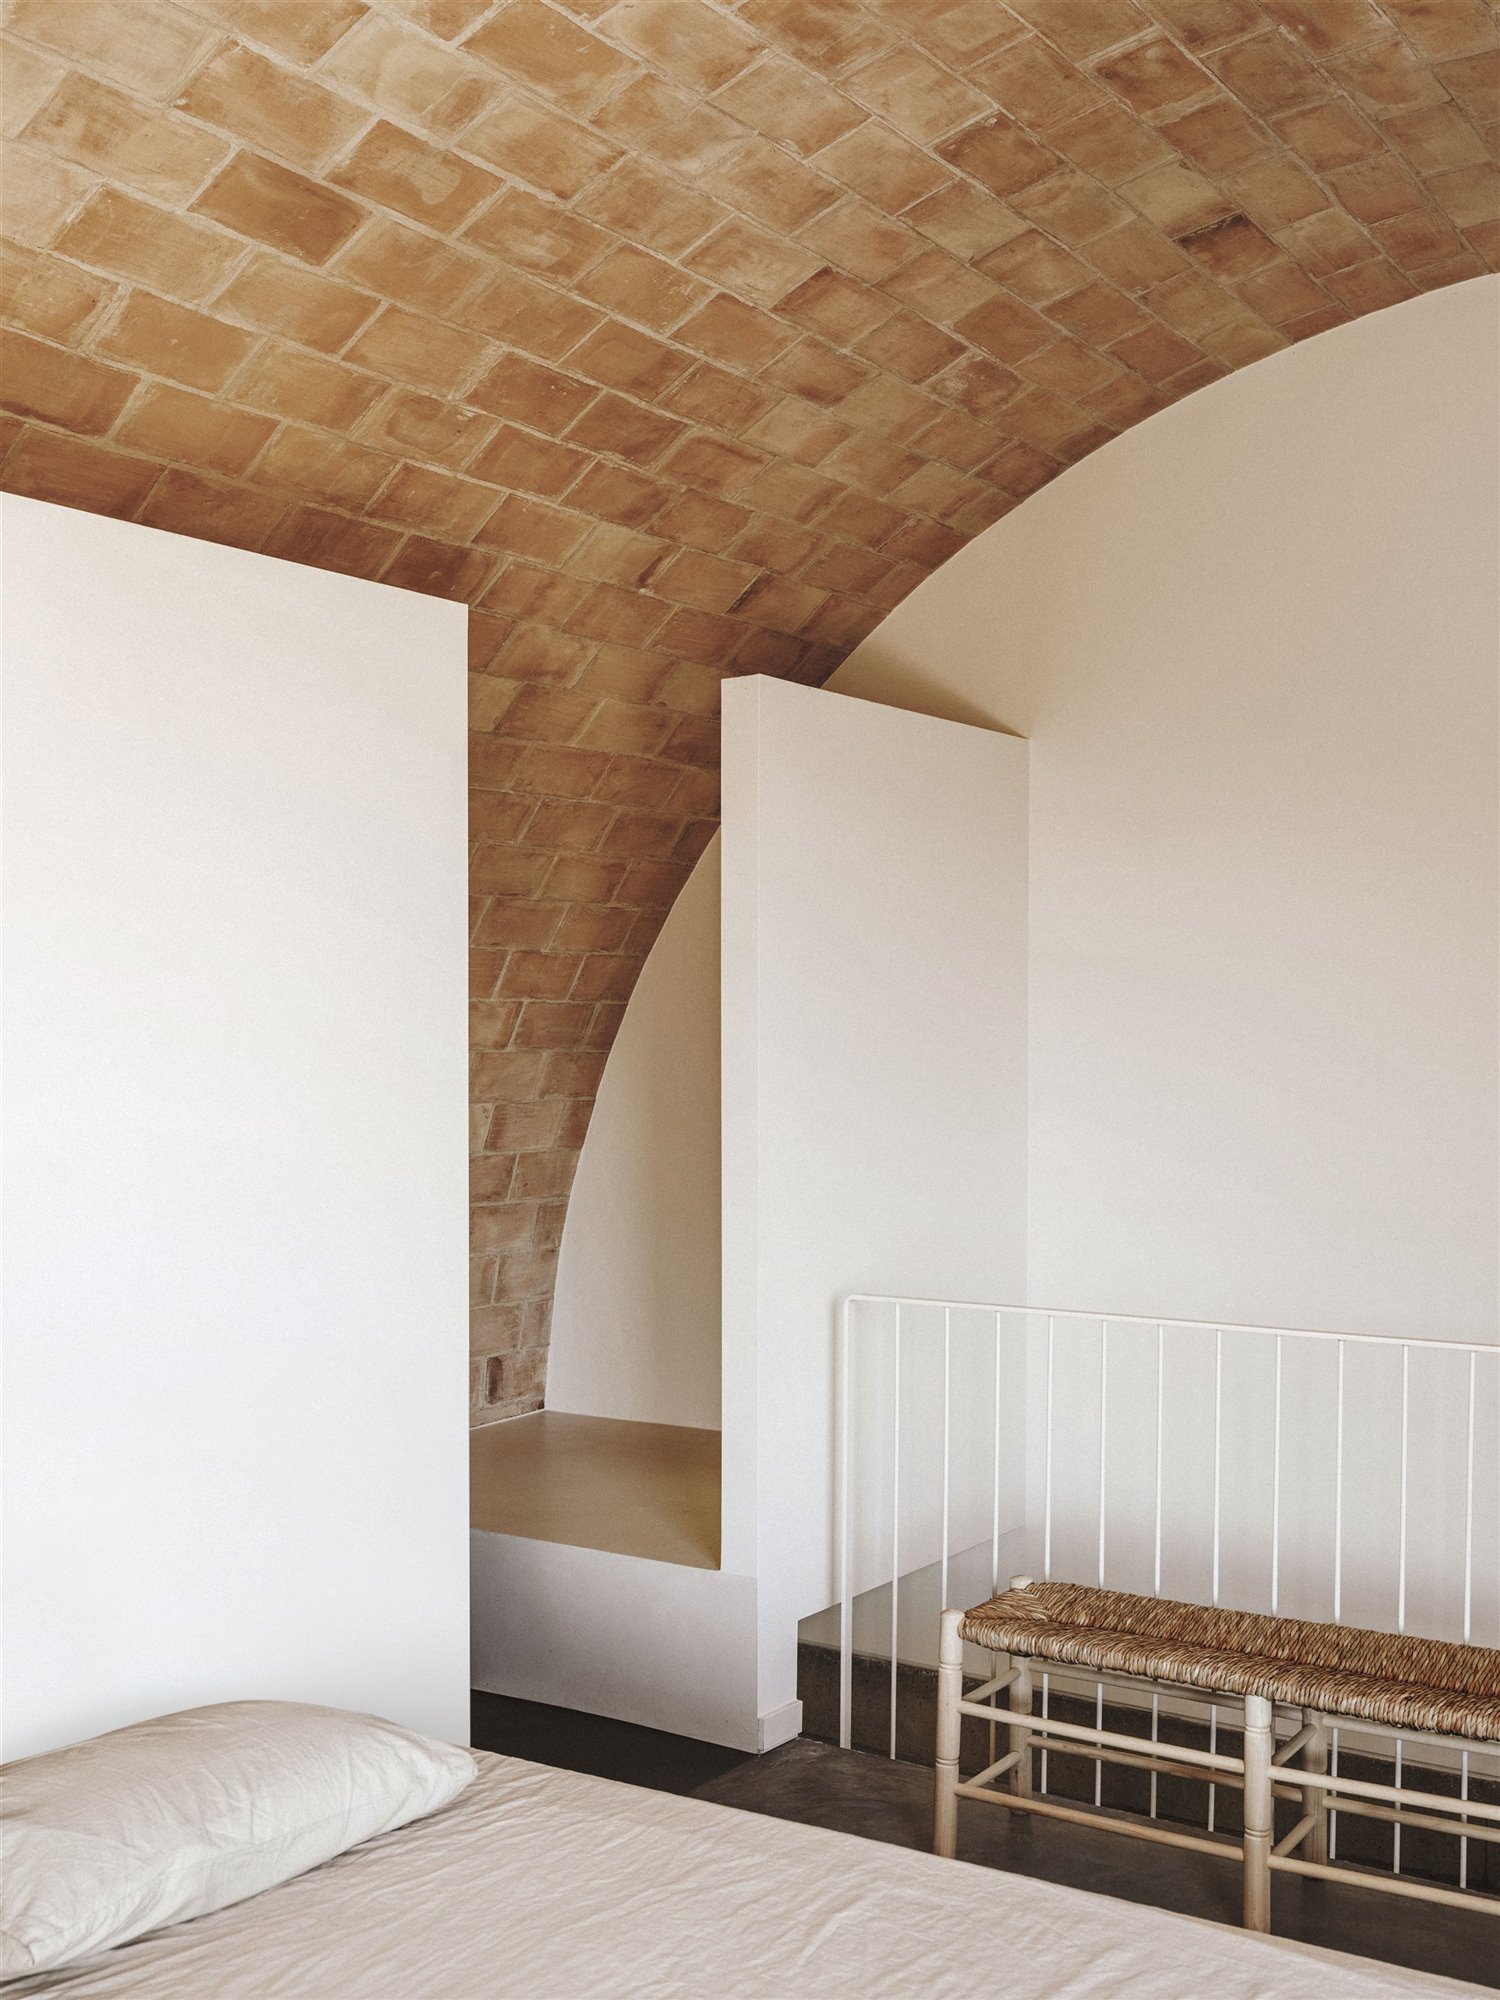 Casa moderna en el campo del estudio de arquitectura Mesura piso superior con paredes encaladas y techo con volta catalana de ladrillo